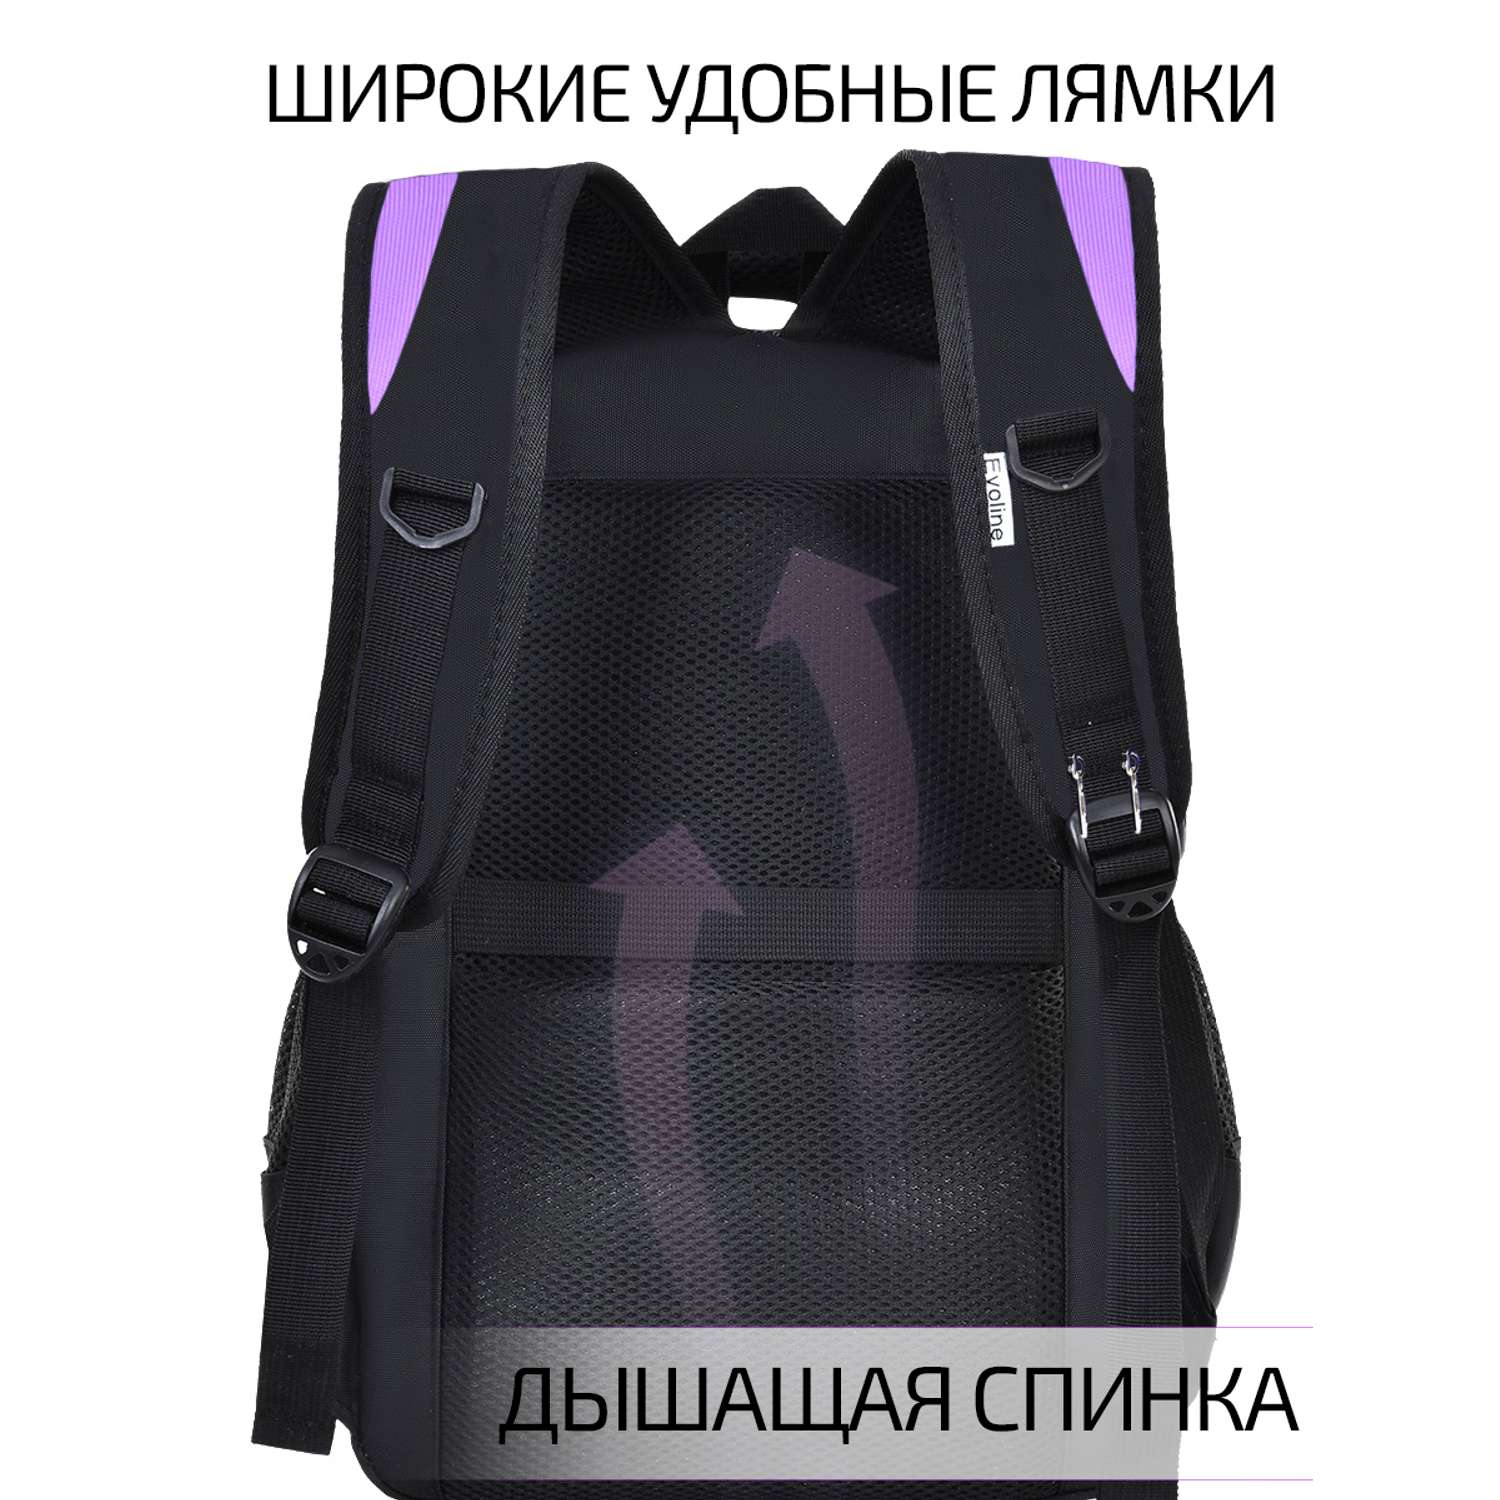 рюкзак школьный Evoline Черный дракон 41 см спинка Bevo-dragon - фото 9